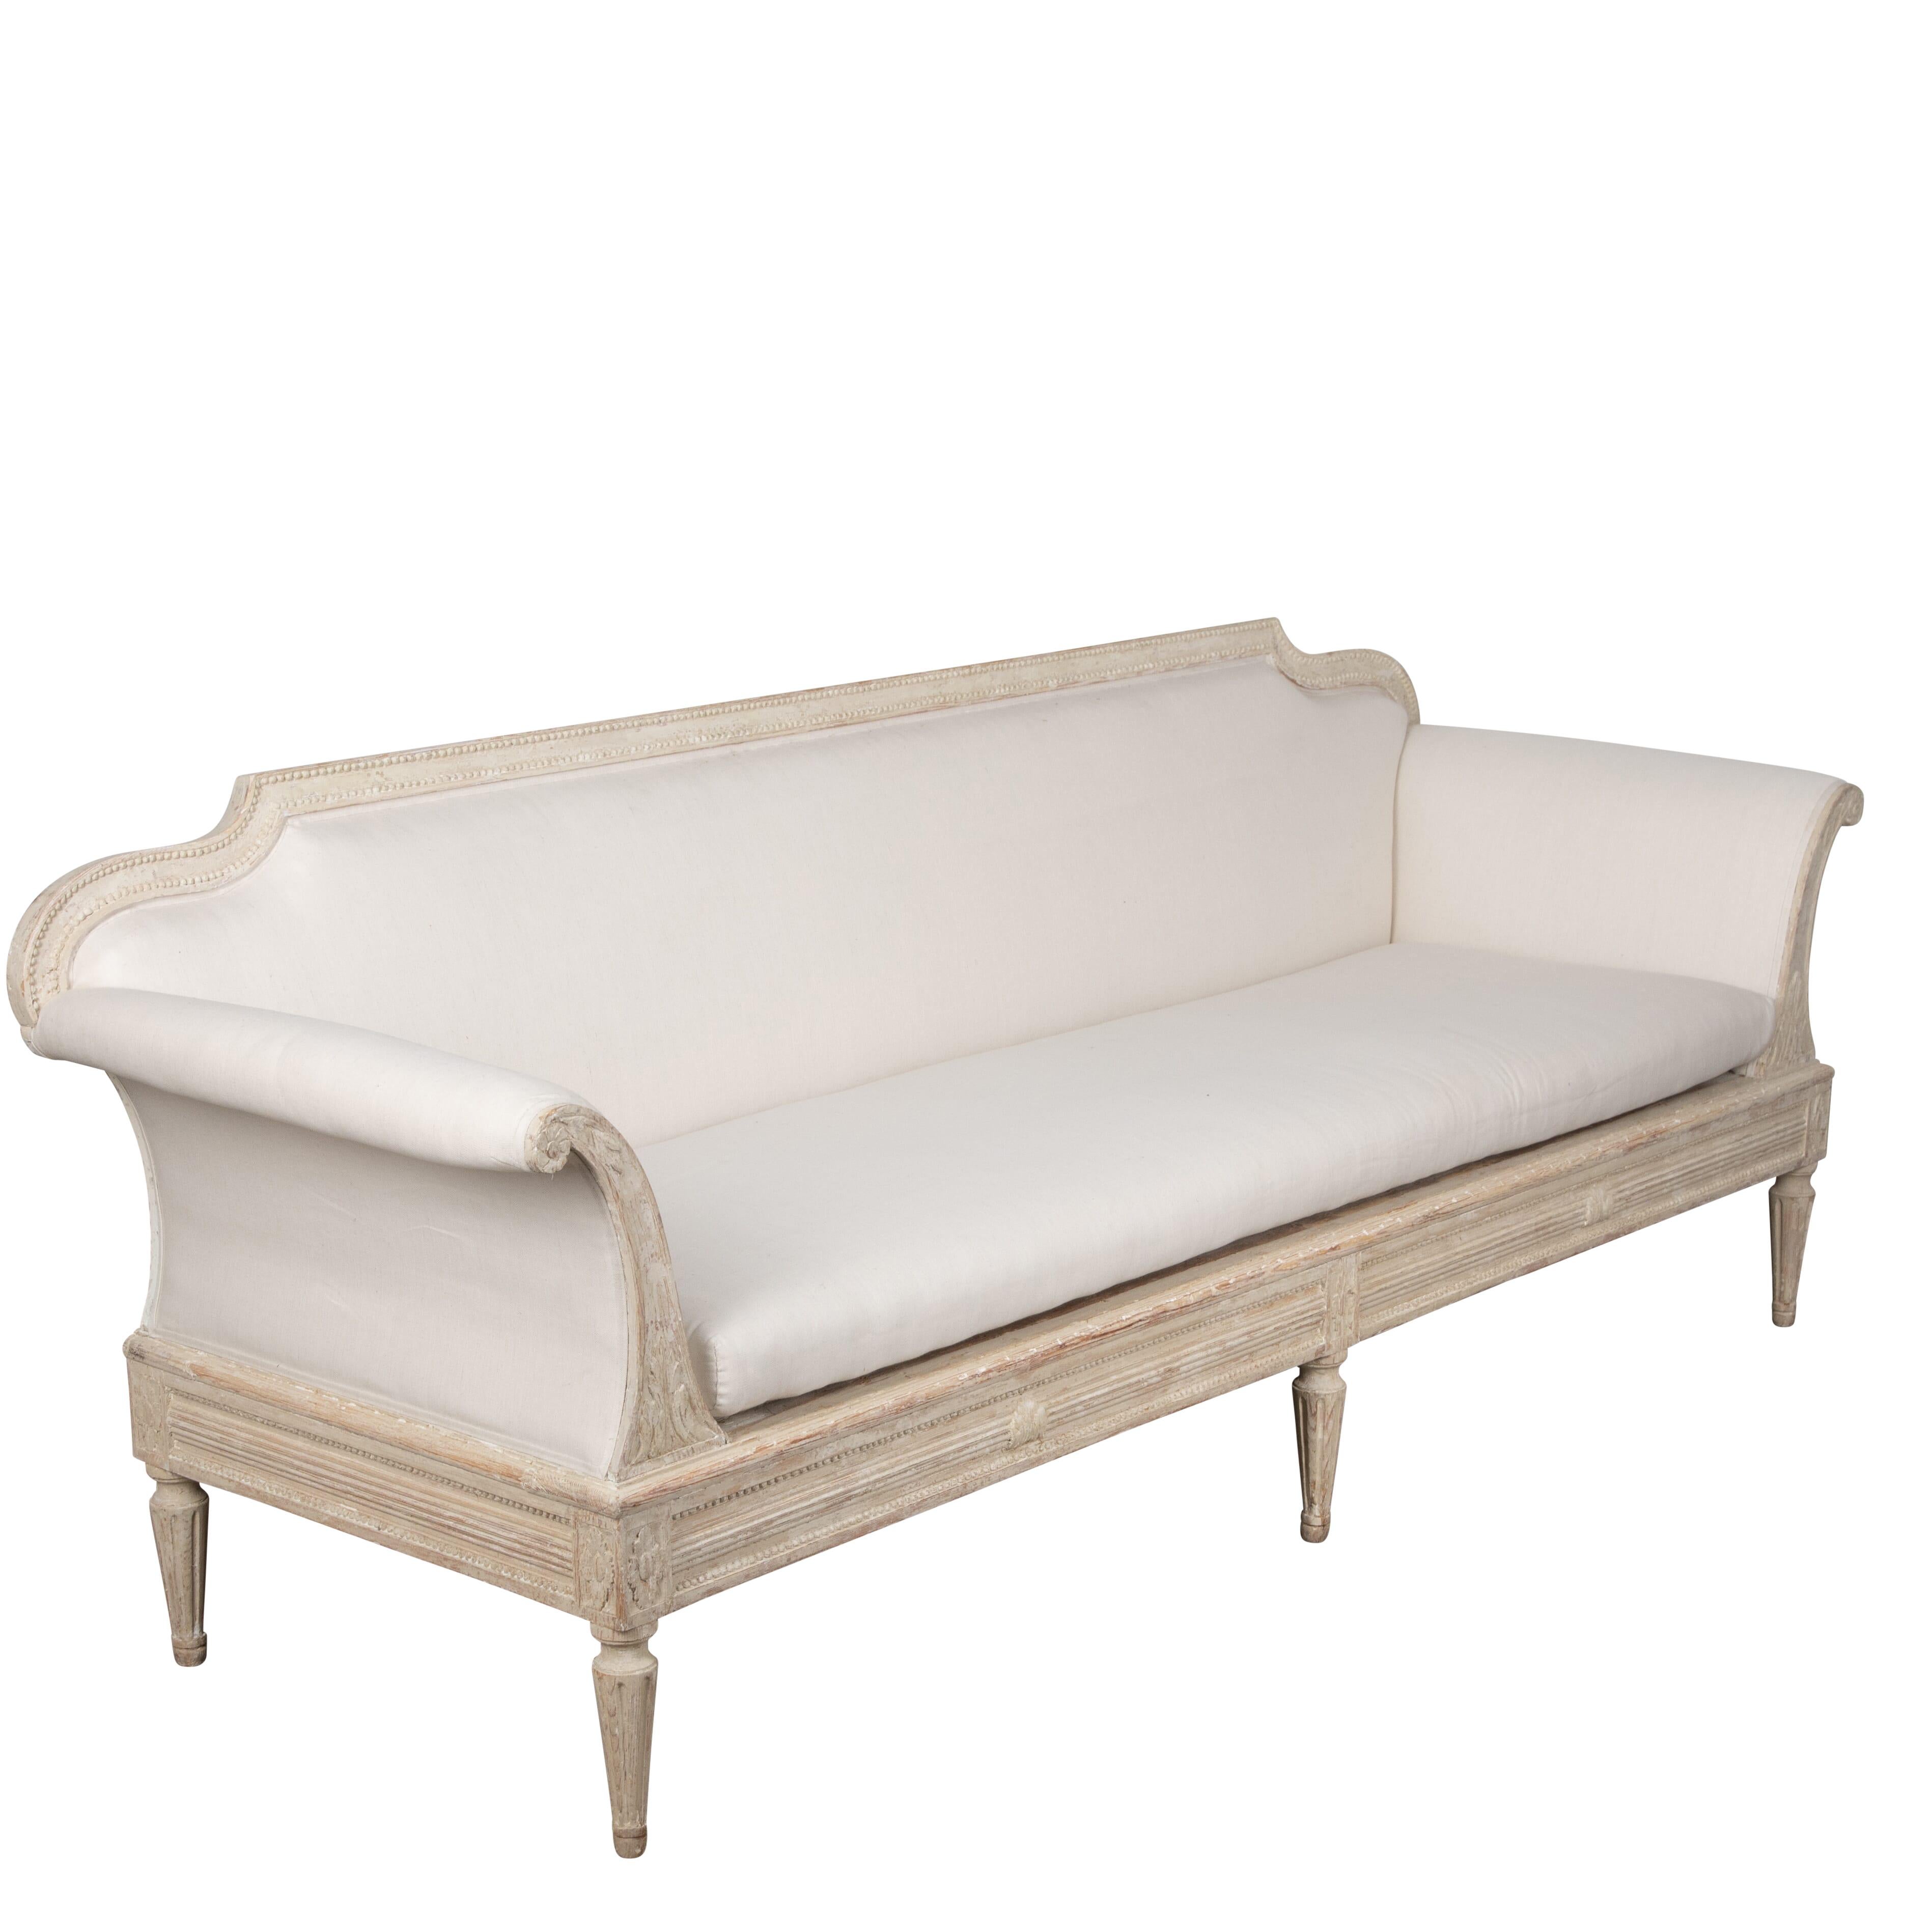 Canapé gustavien du XIXe siècle dans le style Manor House.
Décoration sculptée sur les bras, les jambes et le tablier.
Ce canapé est doté d'un dossier amovible et peut donc également être utilisé comme lit de jour.